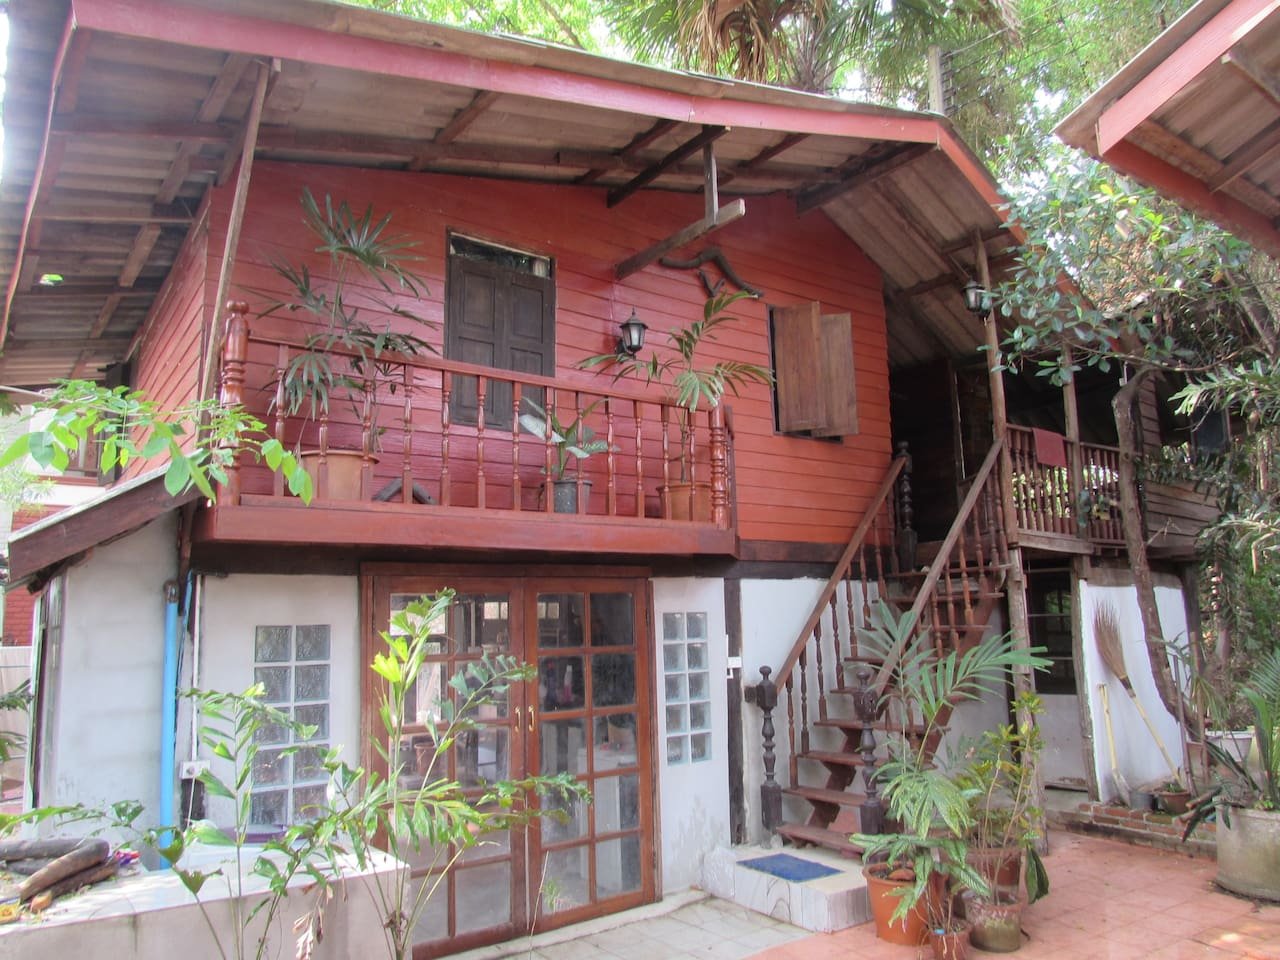 บ้านสองชั้นครึ่งปูนครึ่งไม้ มีเสน่ห์แบบไทย ๆ สวยงามด้วยงานไม้เก่า